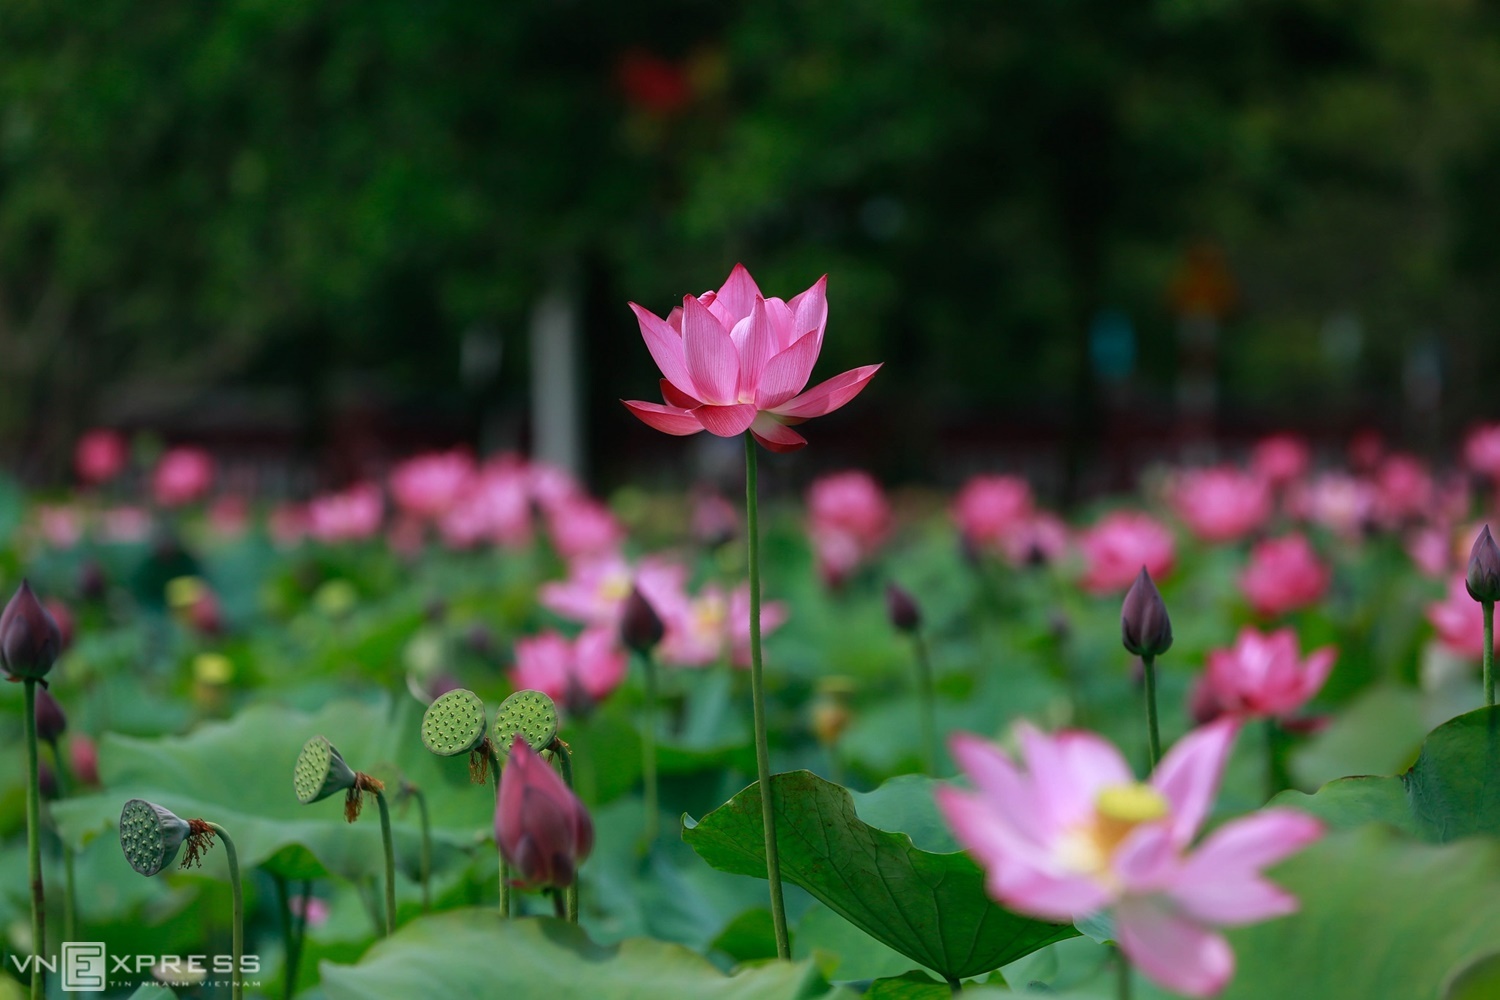 Hue lotus season